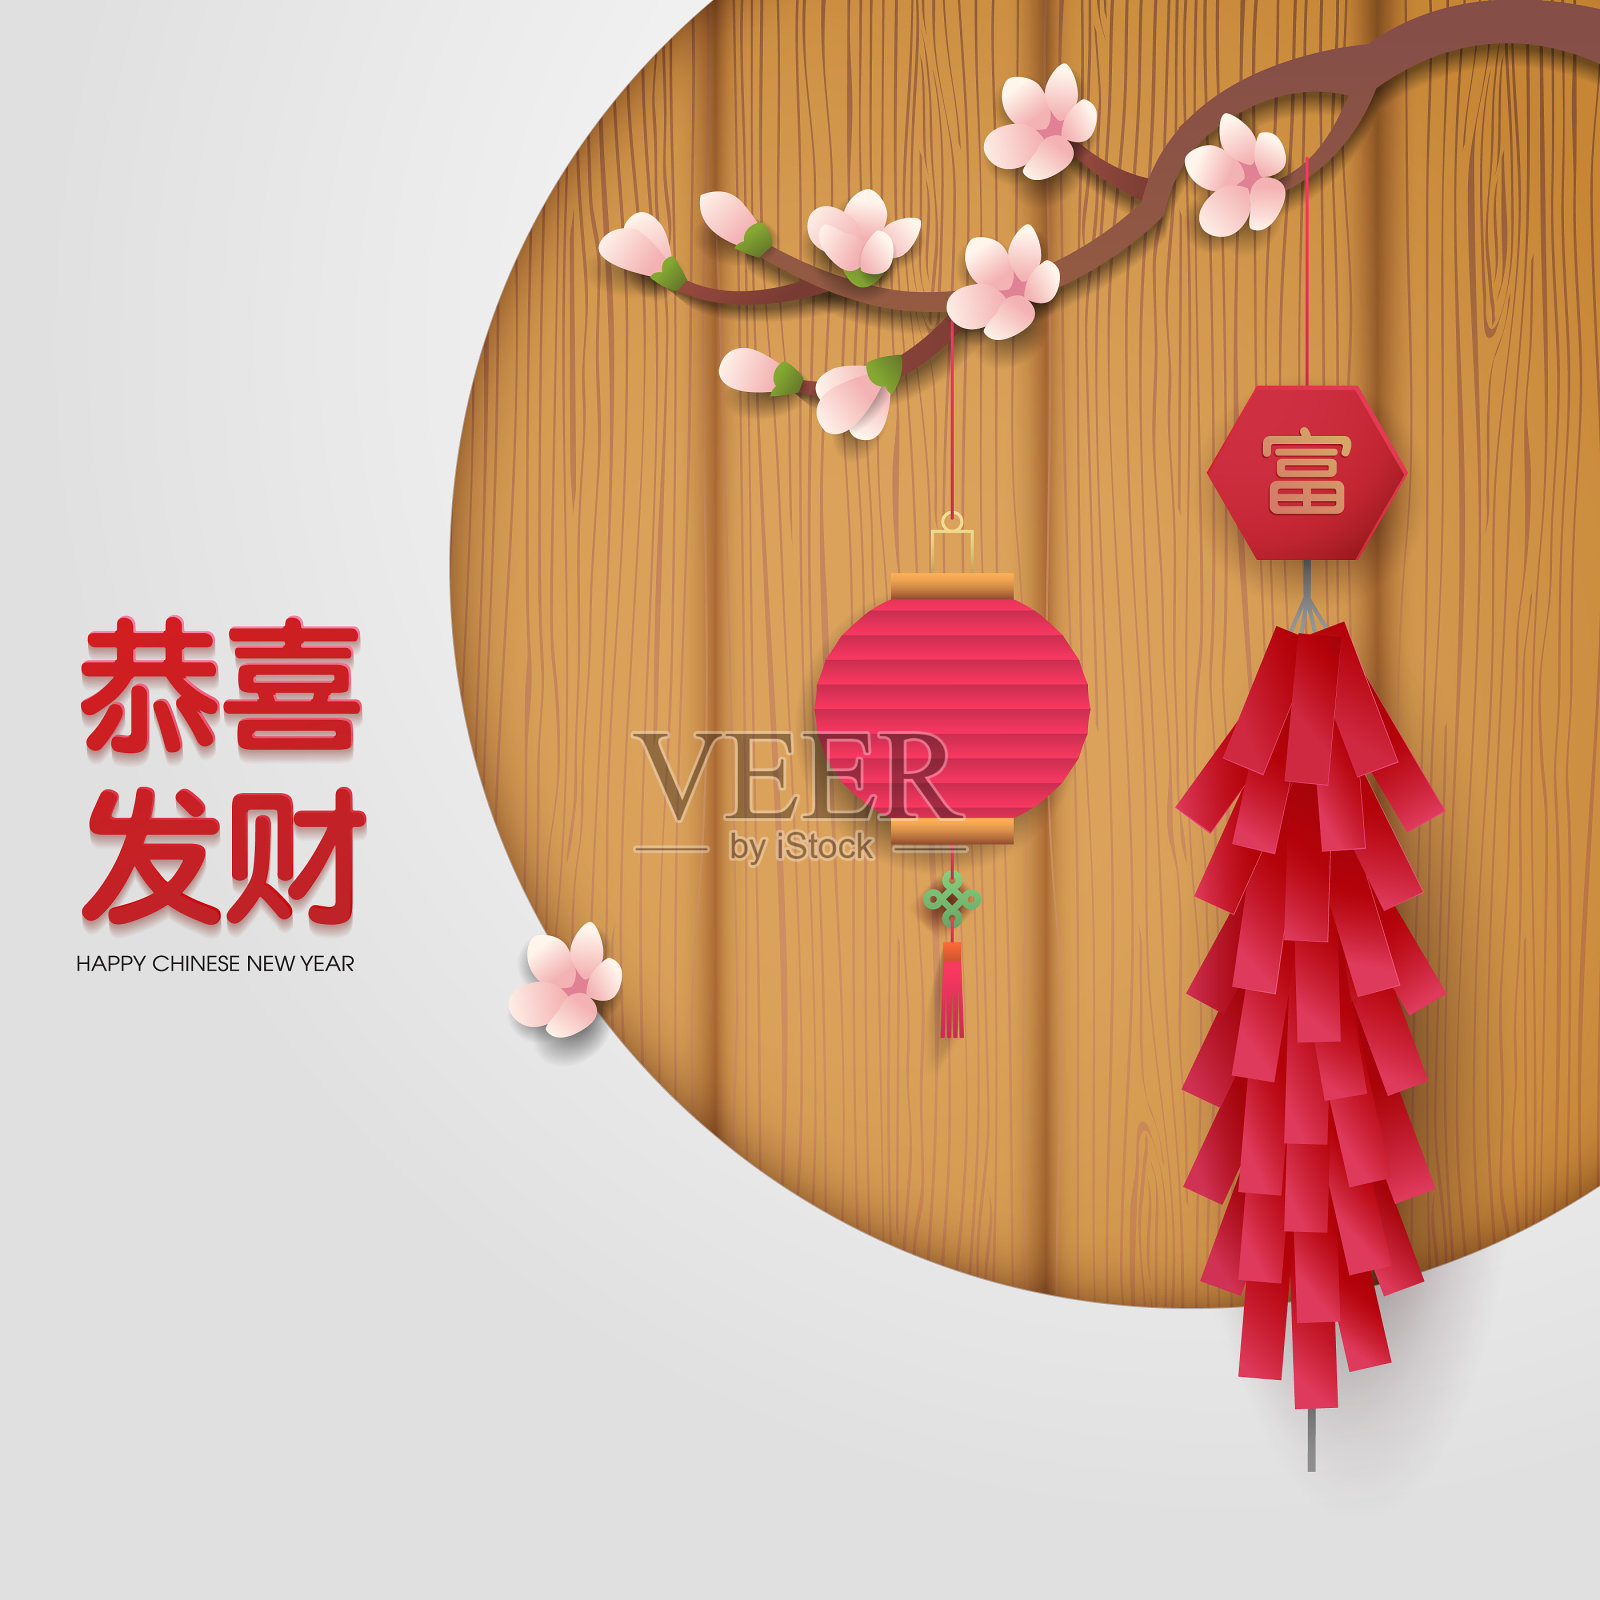 中国新年背景设计模板素材